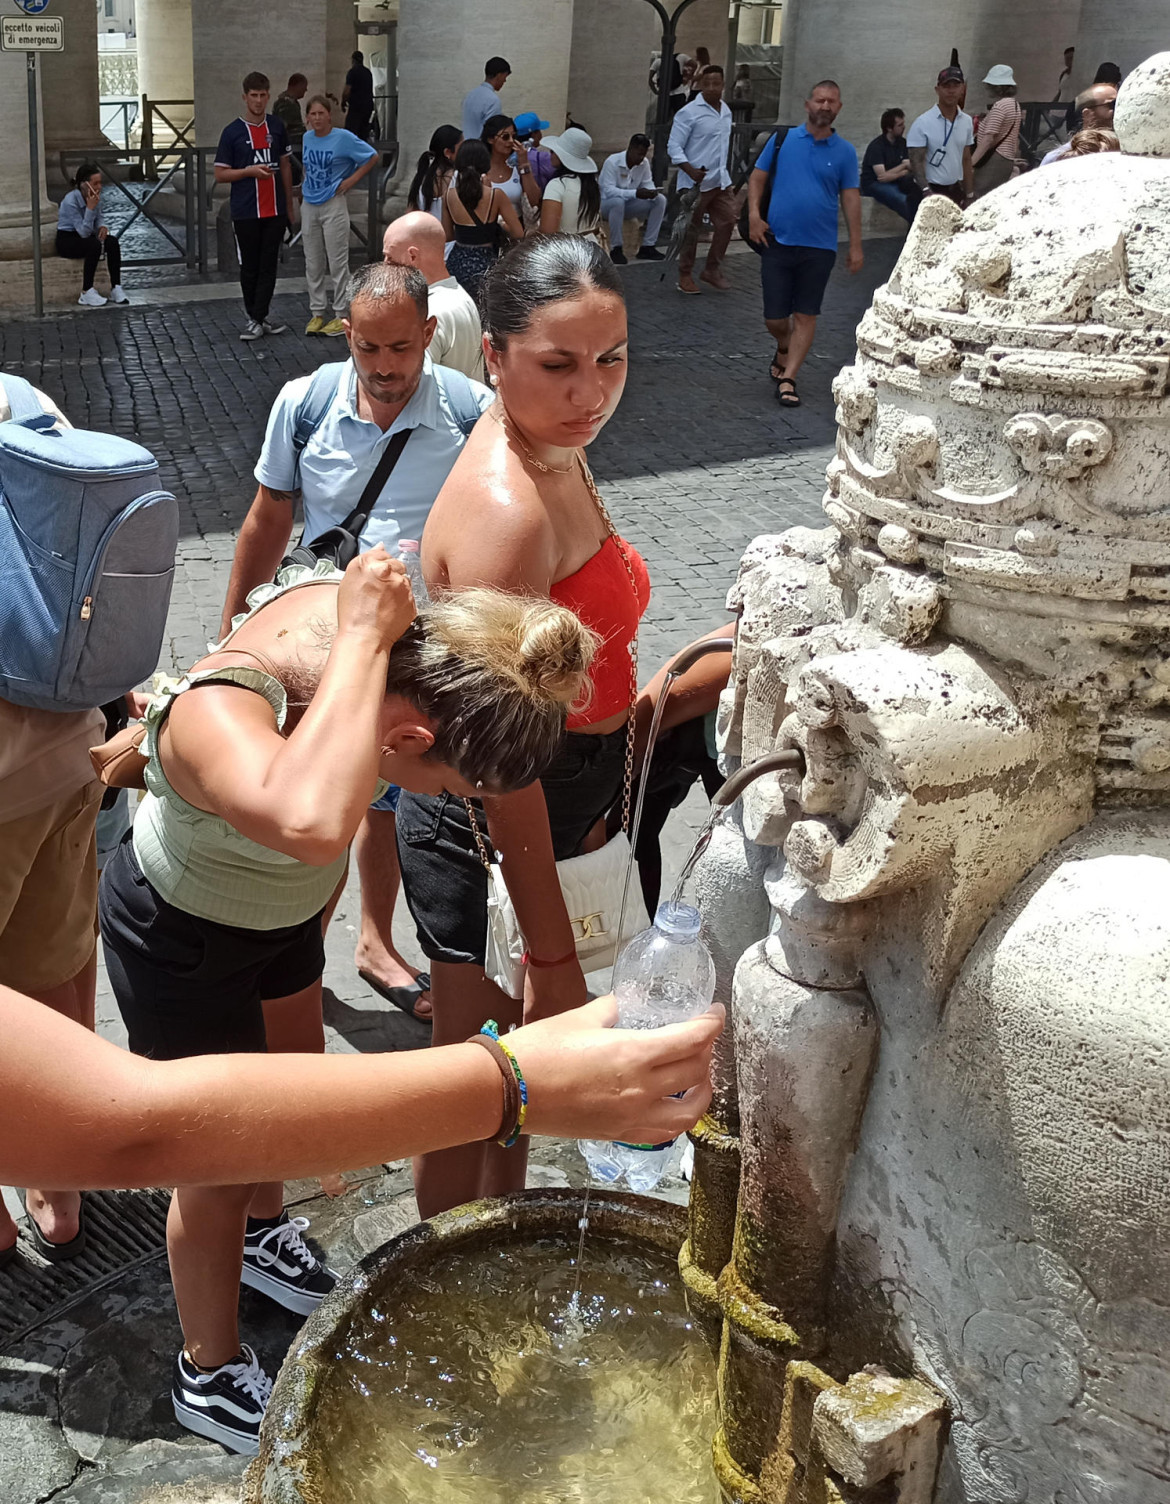 Personas refrescándose por el calor en Roma, Italia. Foto: EFE